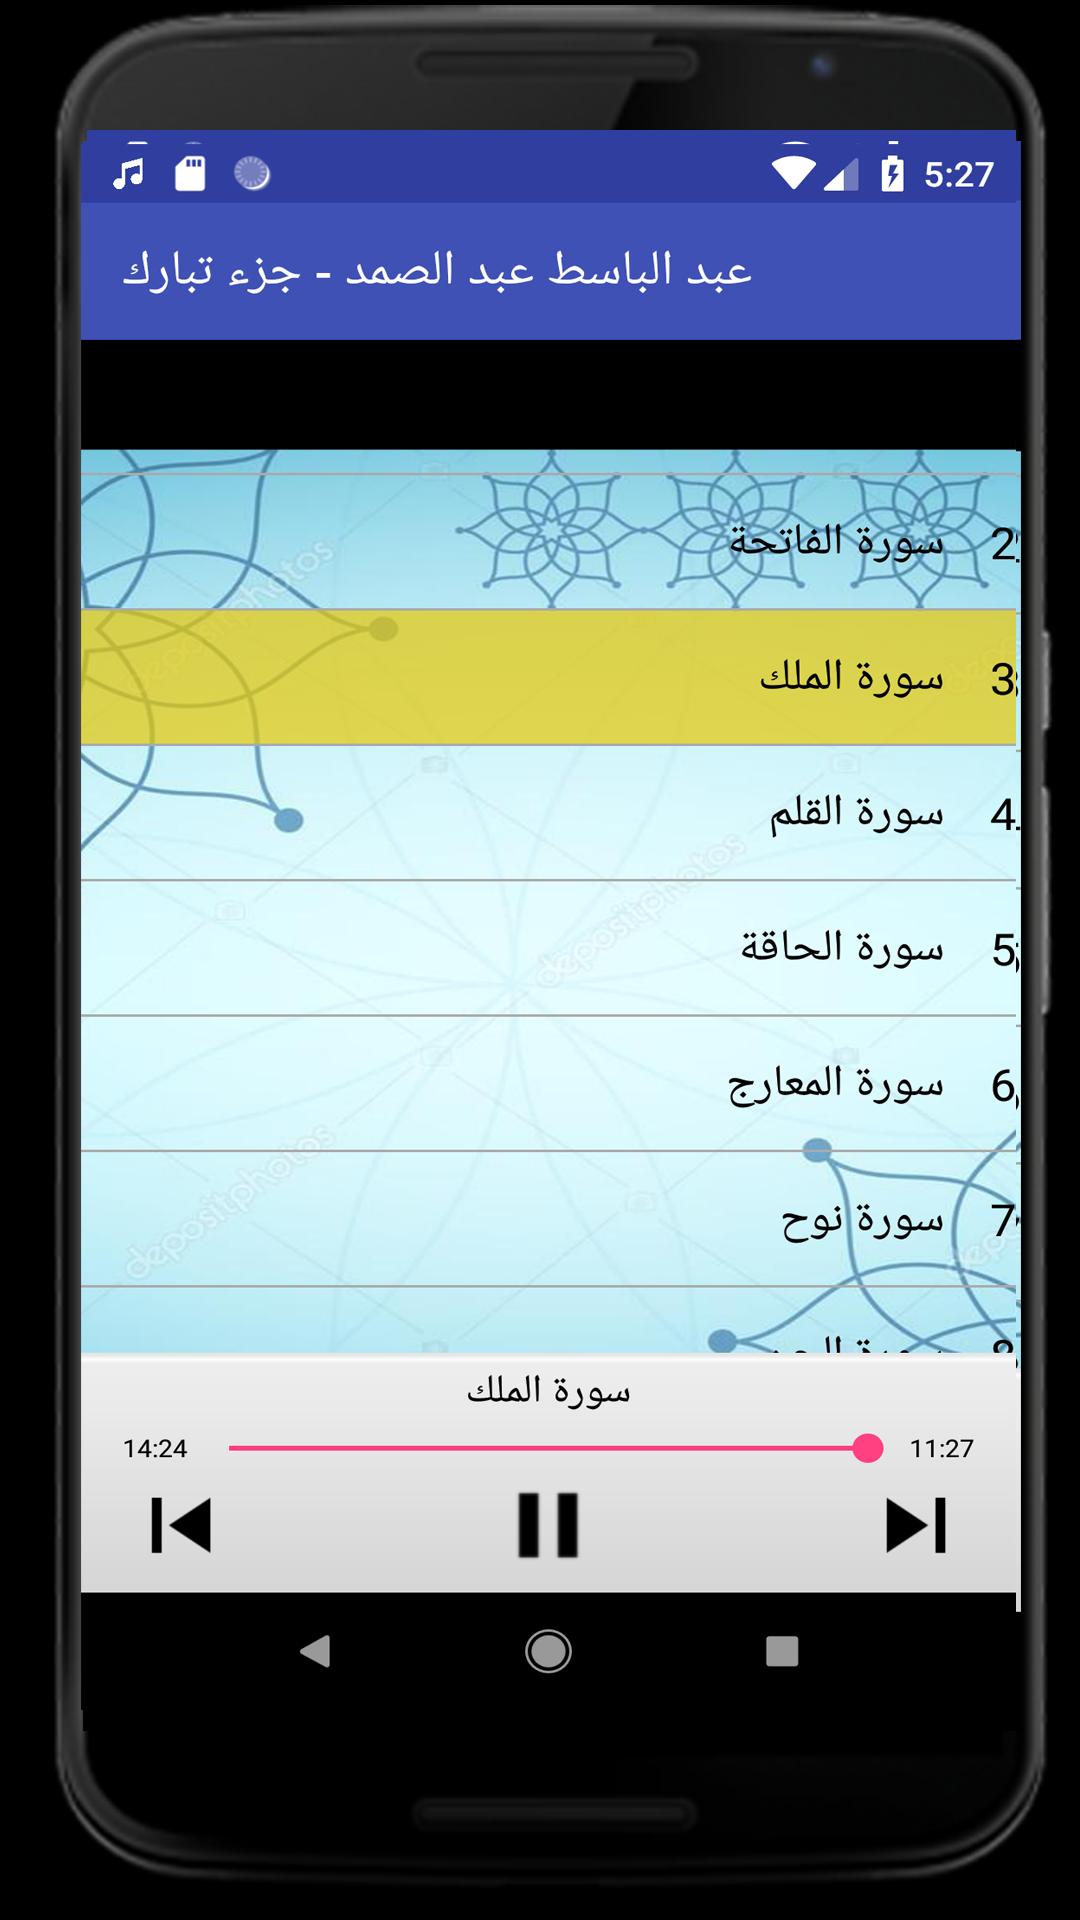 عبد الباسط عبد الصمد جزء تبارك for Android - APK Download